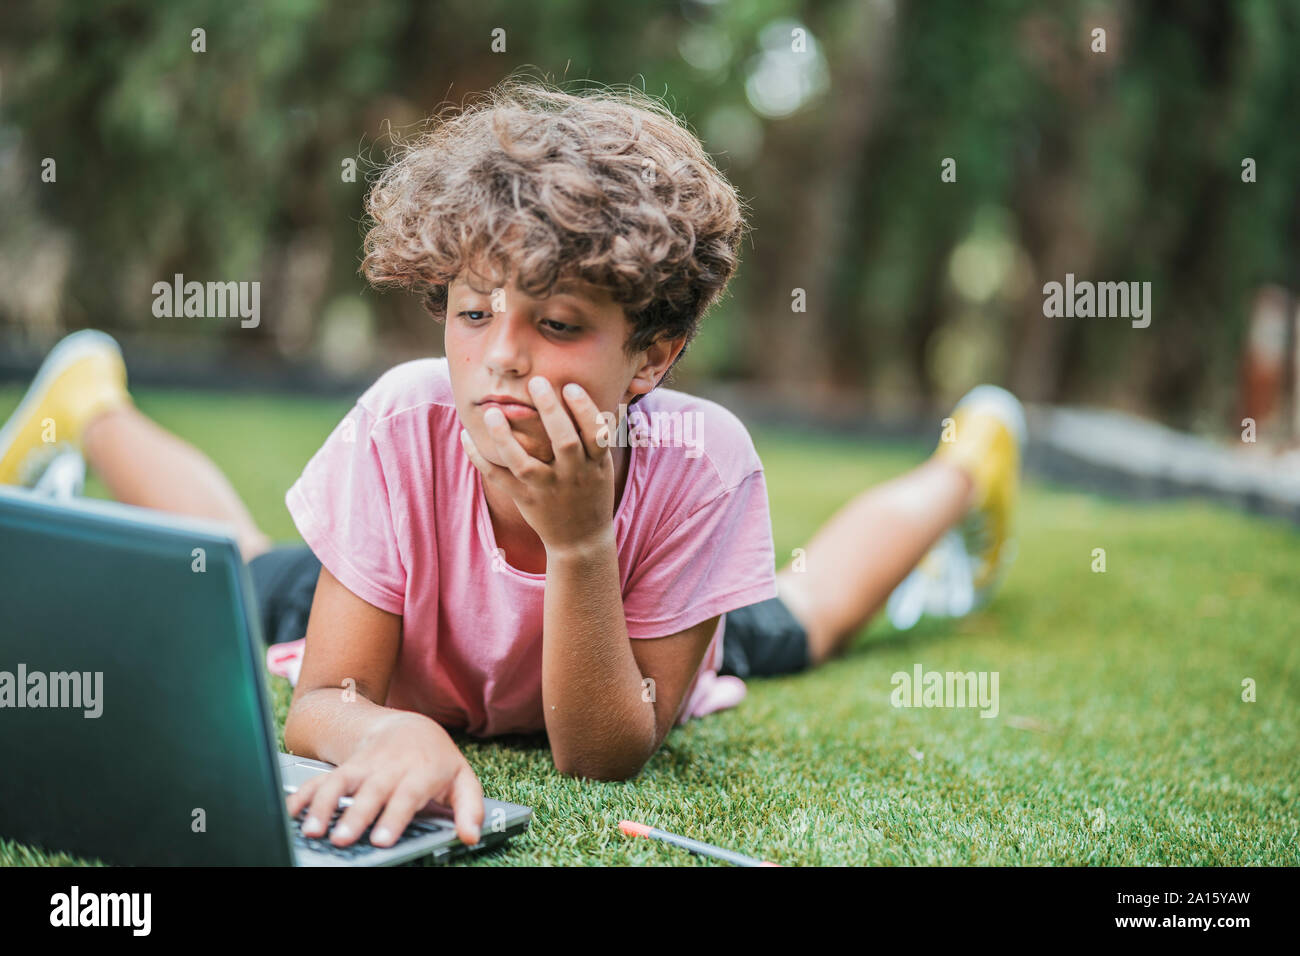 Junge im Gras liegend mit Laptop Stockfoto